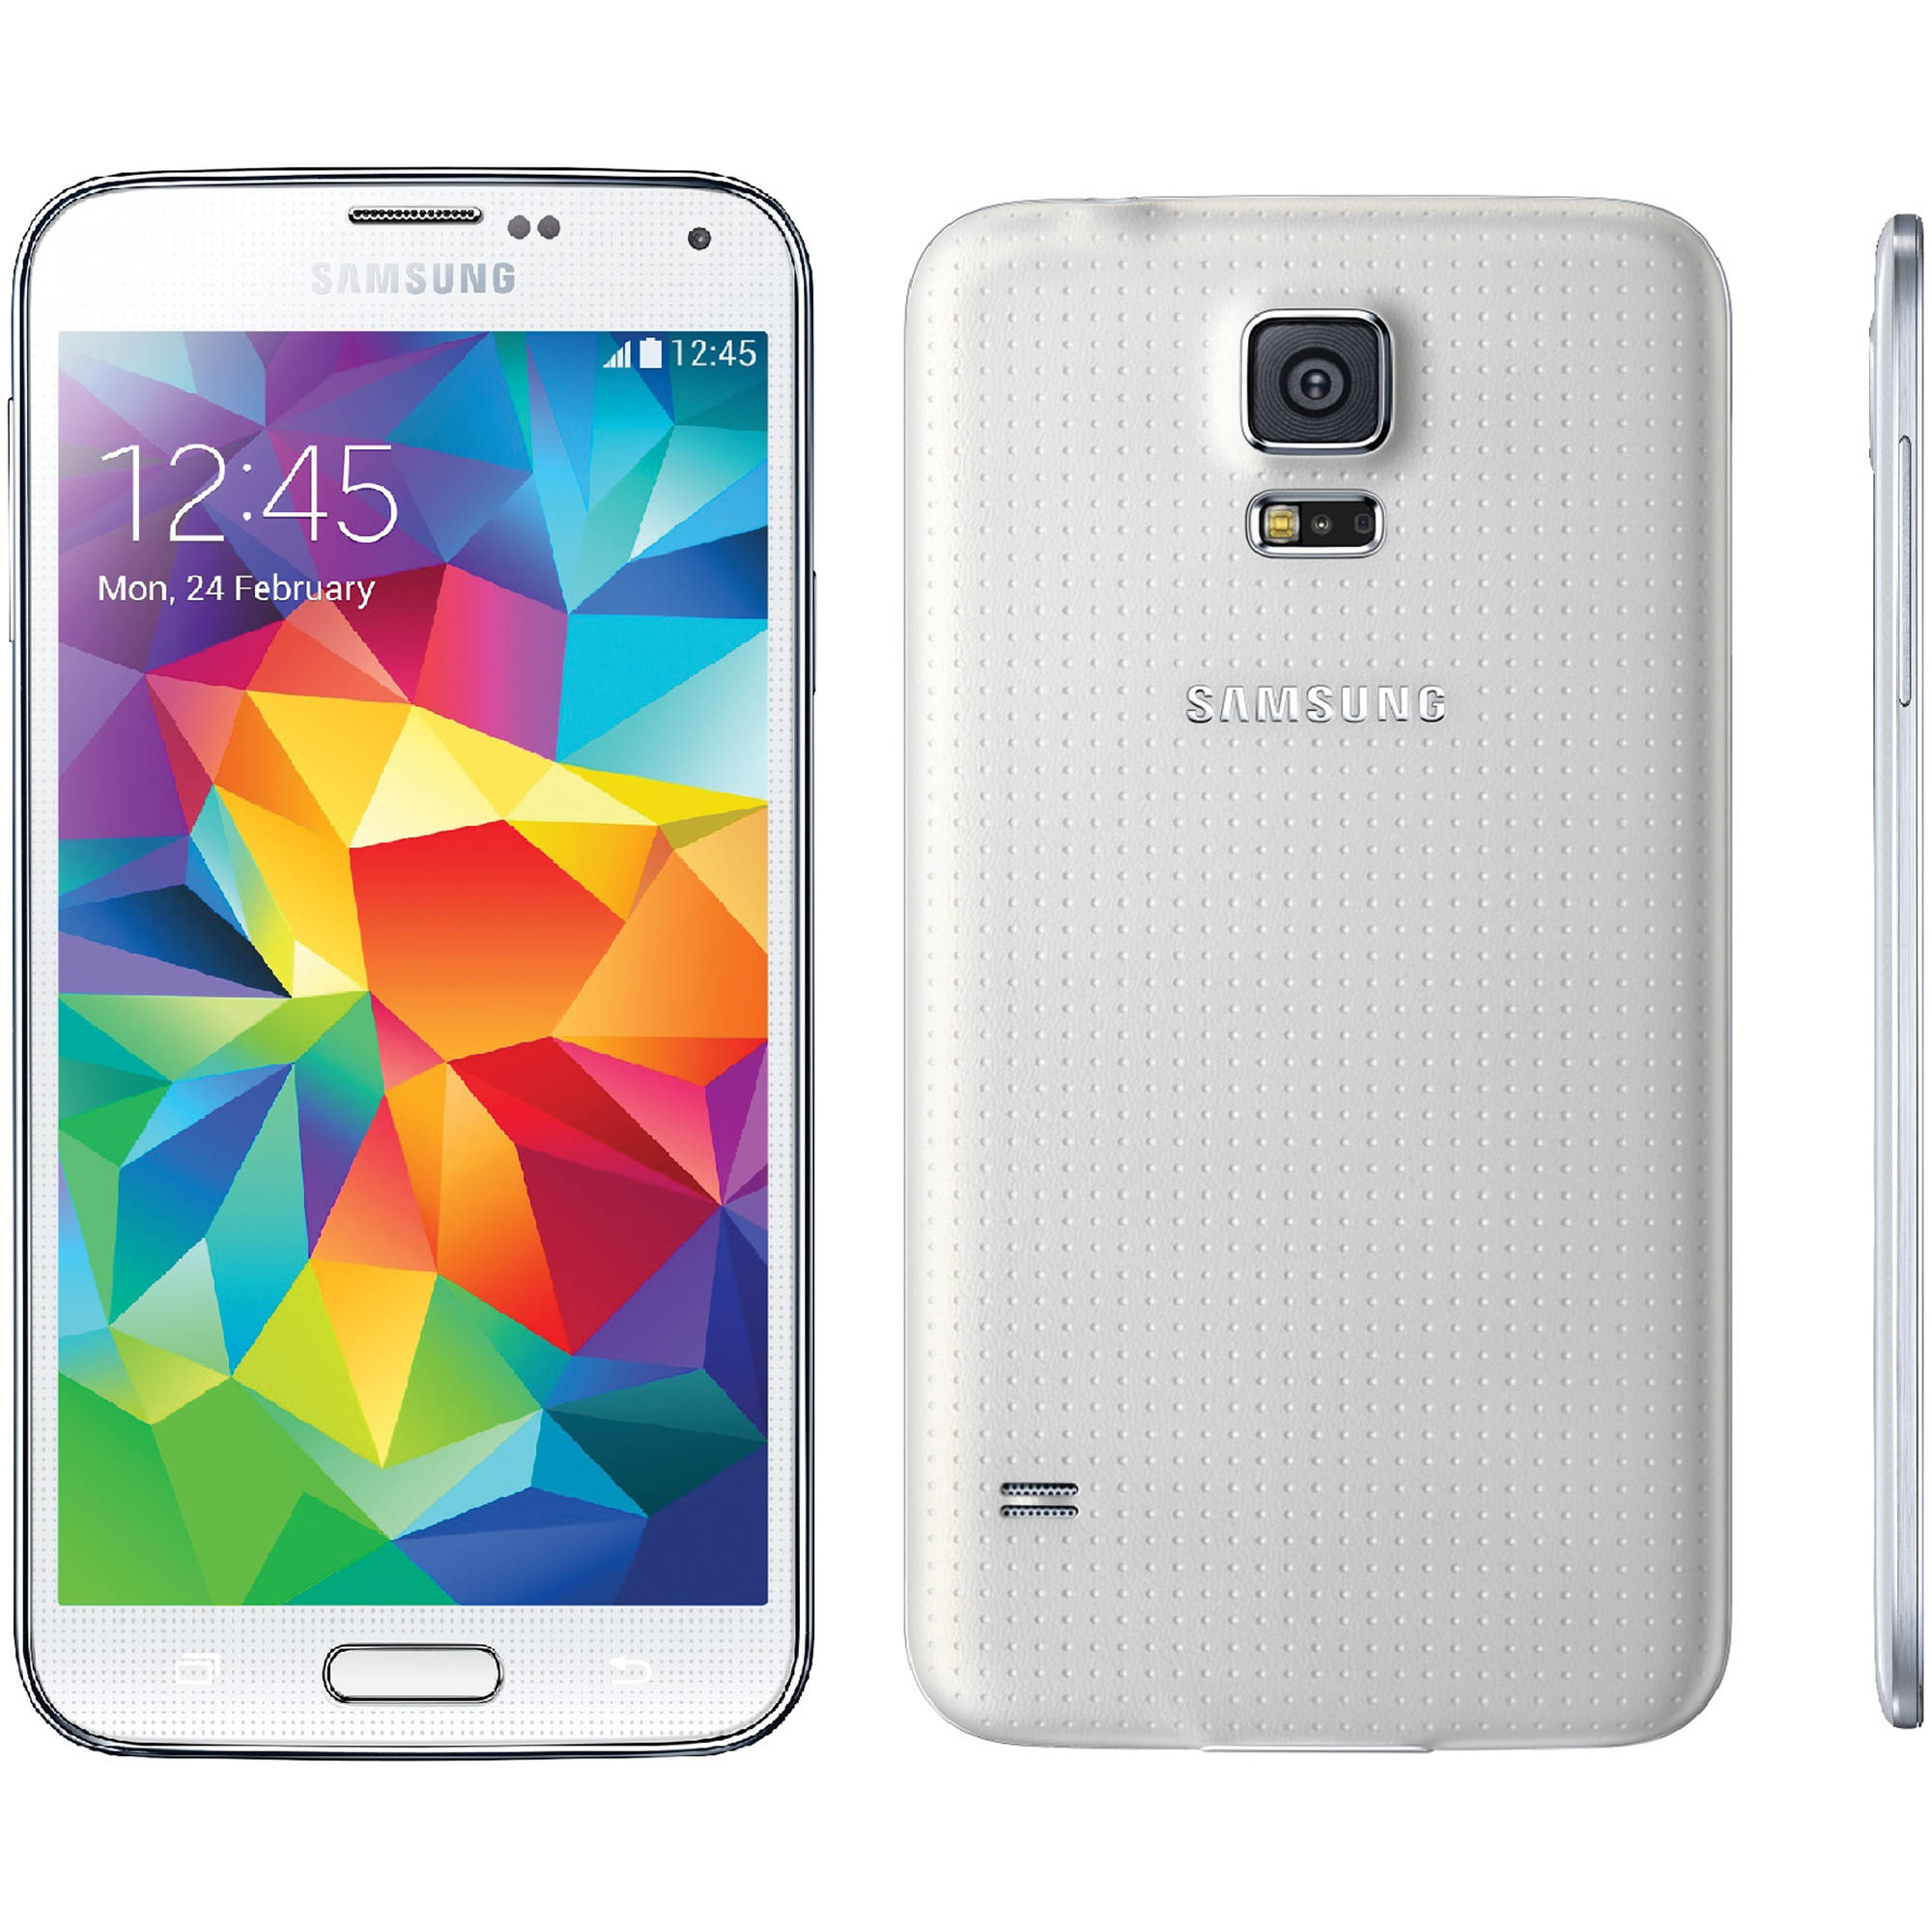 Samsung Galaxy S5 Sm G900a 16gb At T Branded Sm G900a White